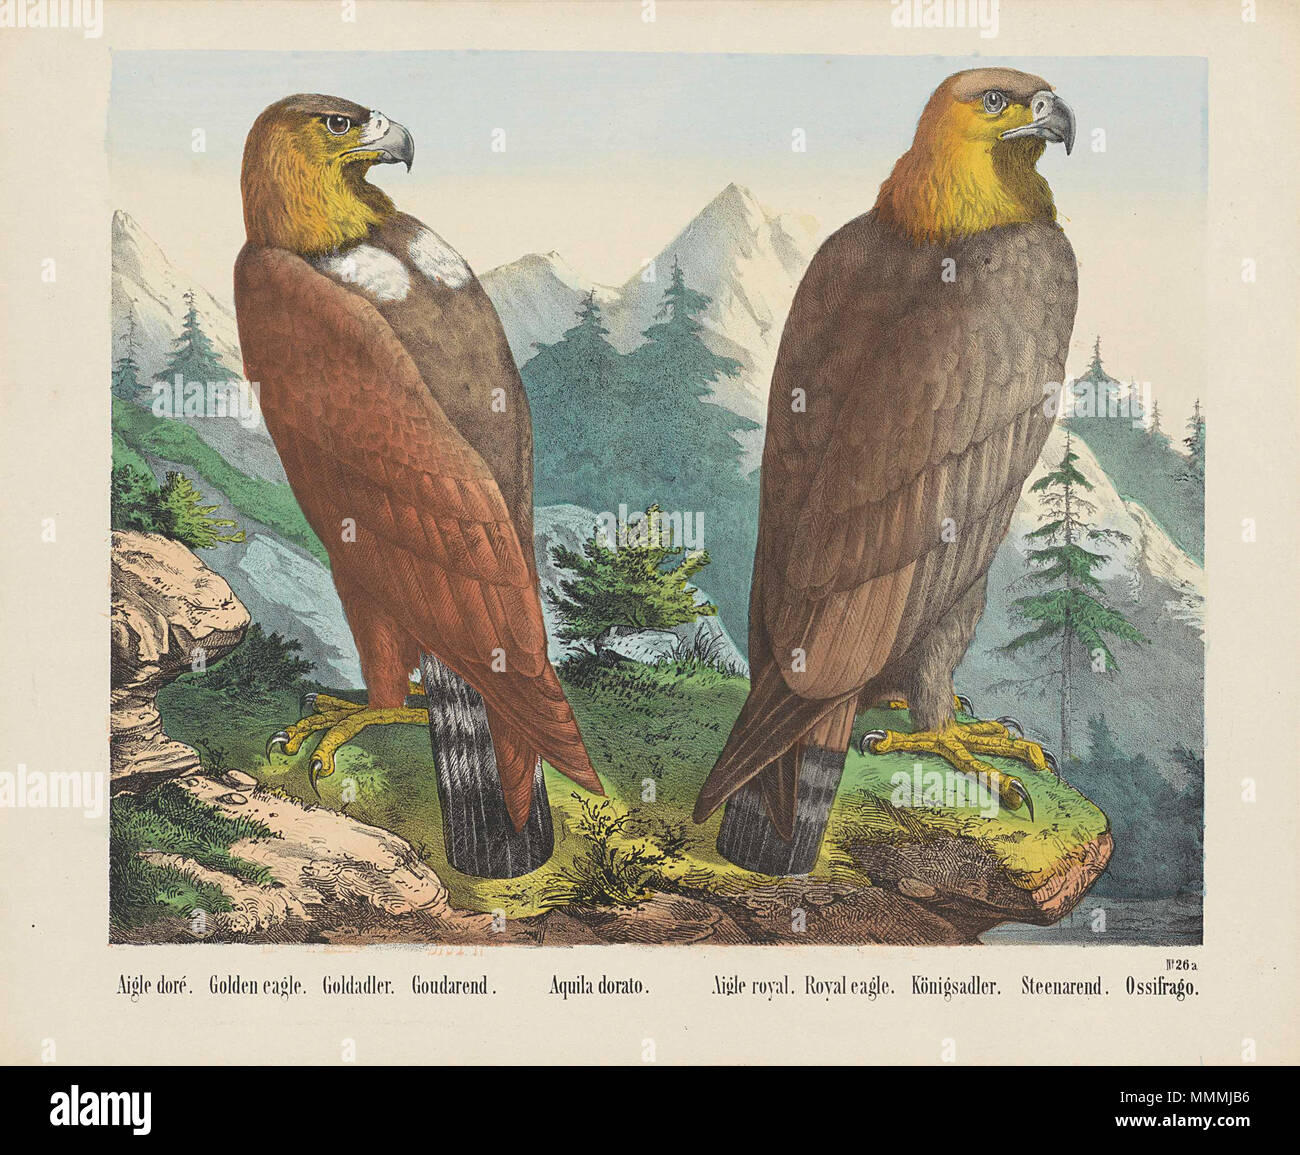 . Twee steenarenden in een berglandschap. Genummerd rechtsonder: No. 26a.; Iconclasscode: 25F33(EAGLE); stampa; volksprent; volgens het onderschrift zijn het twee soorten; in werkelijkheid zijn het beide steenarenden, rechts een juv. Aigle d'o. / Golden Eagle. / Goldadler. / Goudarend. / Aquila dorato. / Aigle royal. / Royal Eagle. / Königsadler. / Steenarend. / Ossifrago. 1829 - 1880; 1829 - 1880. 53 Aquila chrysaetos - golden eagle Foto Stock